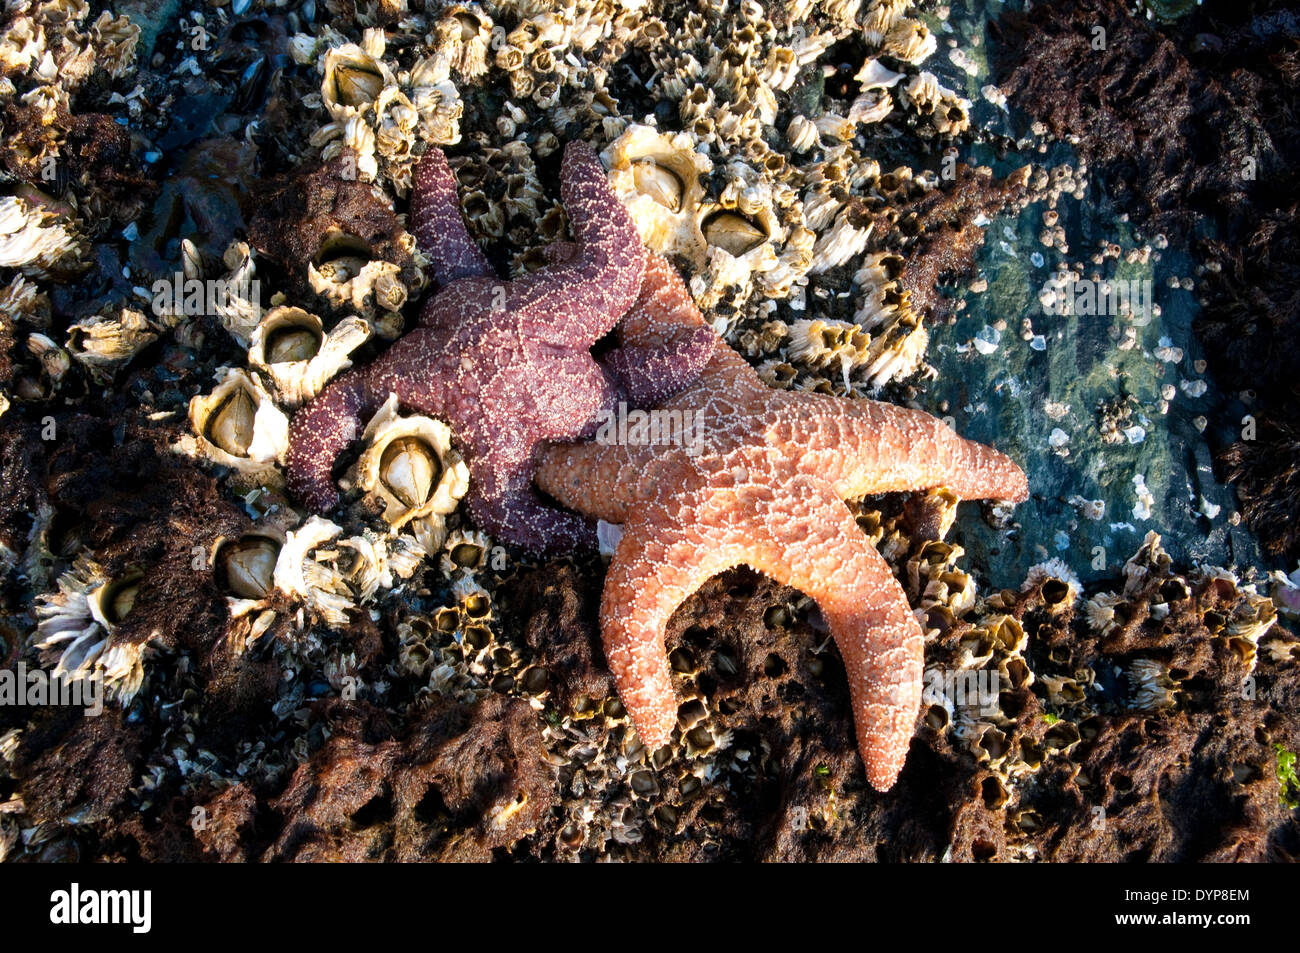 Dos estrellas de mar en rocas cubiertas de barracle en una zona intermareal del océano Pacífico en el bosque tropical Great Bear, Columbia Británica, Canadá. Foto de stock